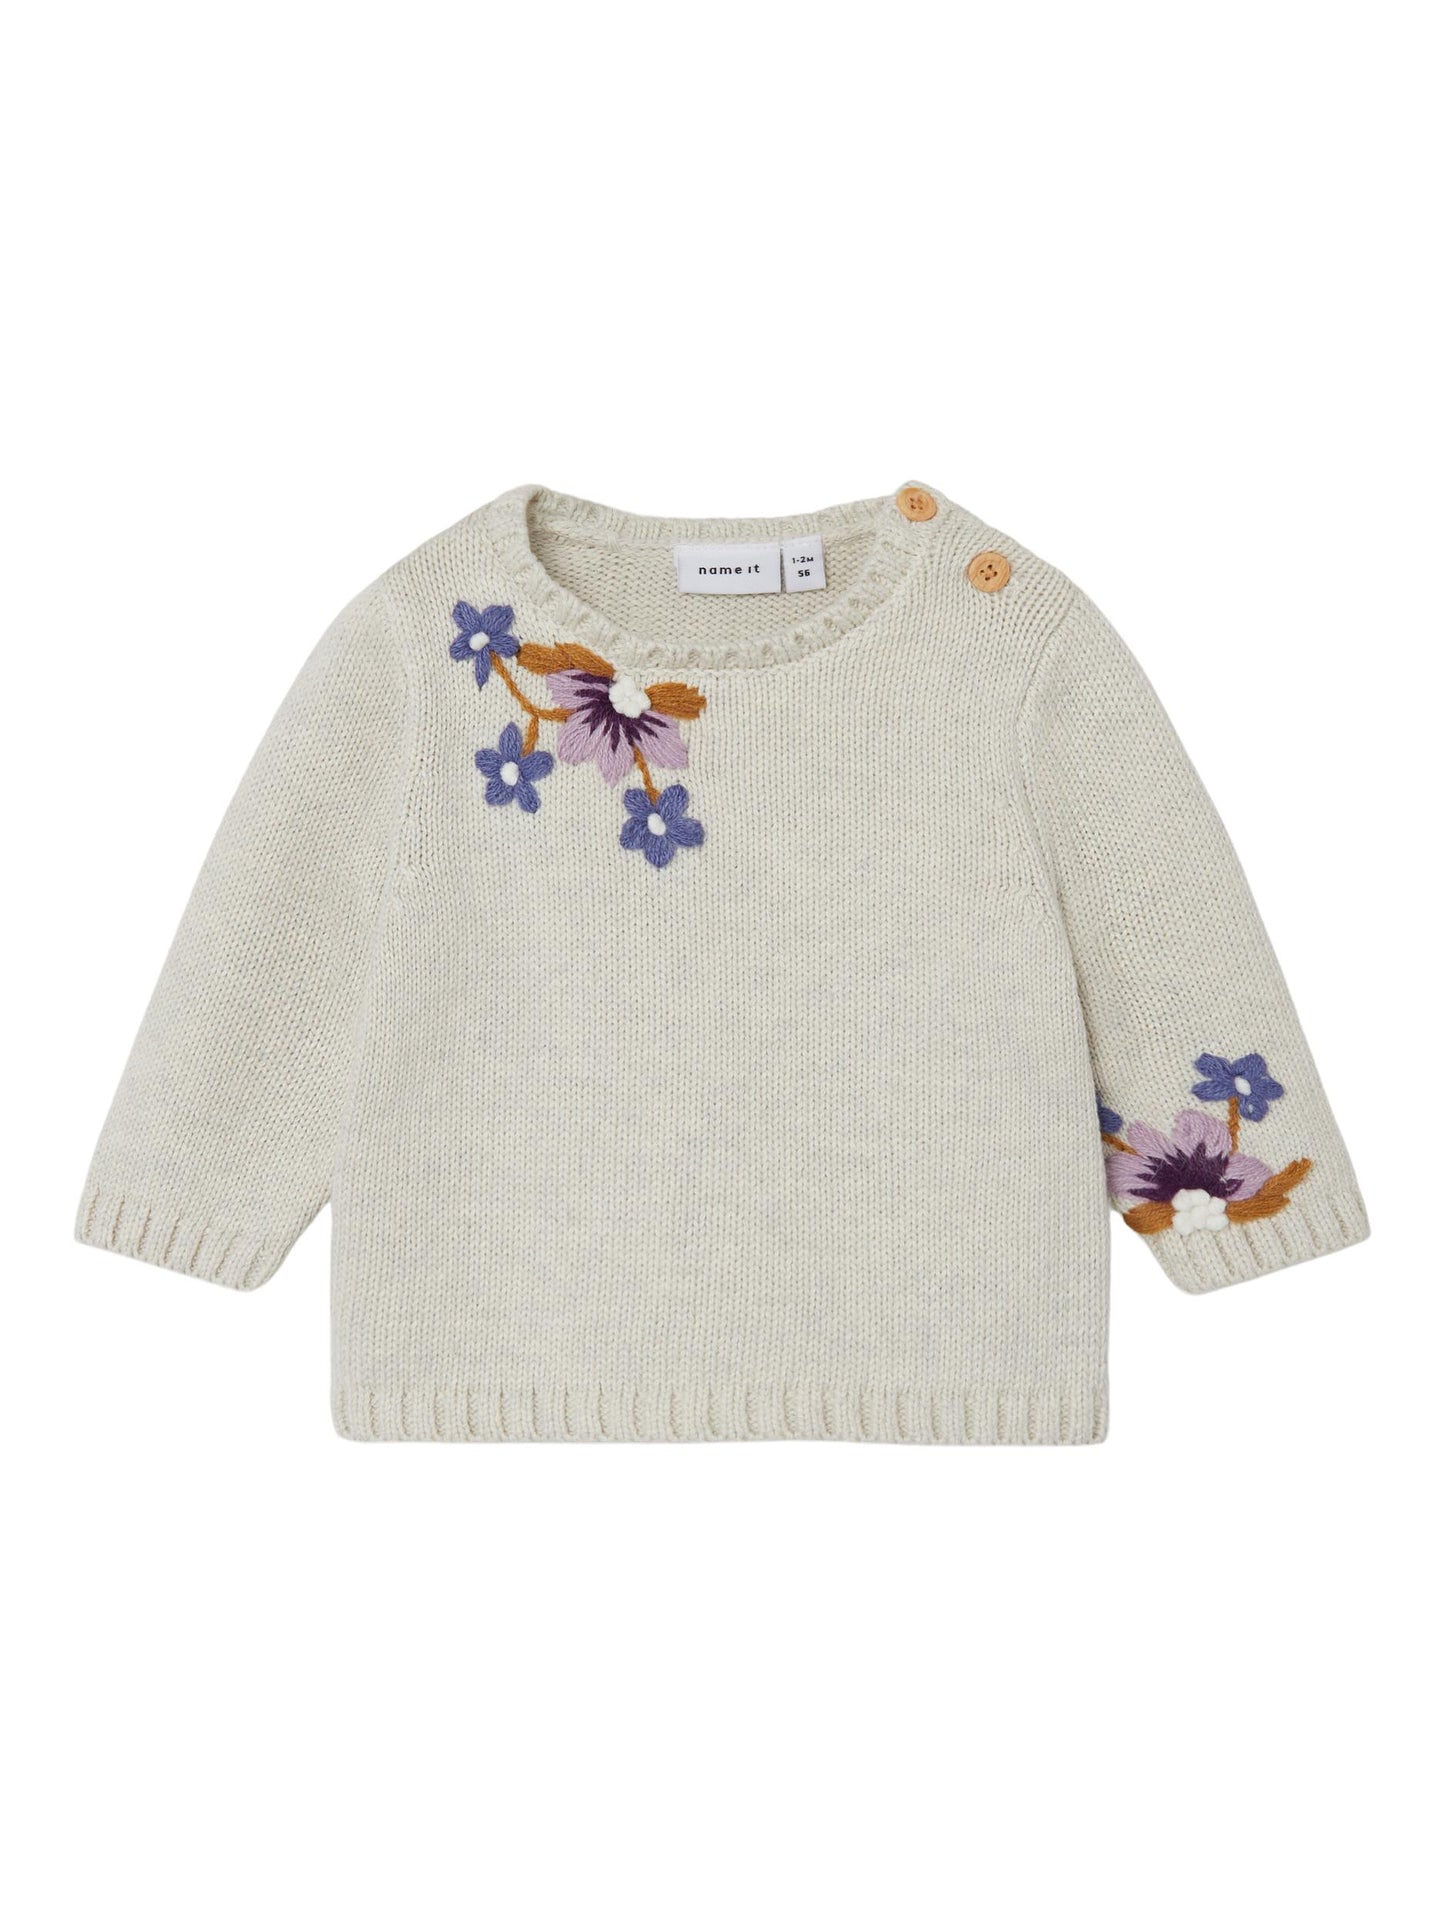 Name it - knit sweater - Peyote melange